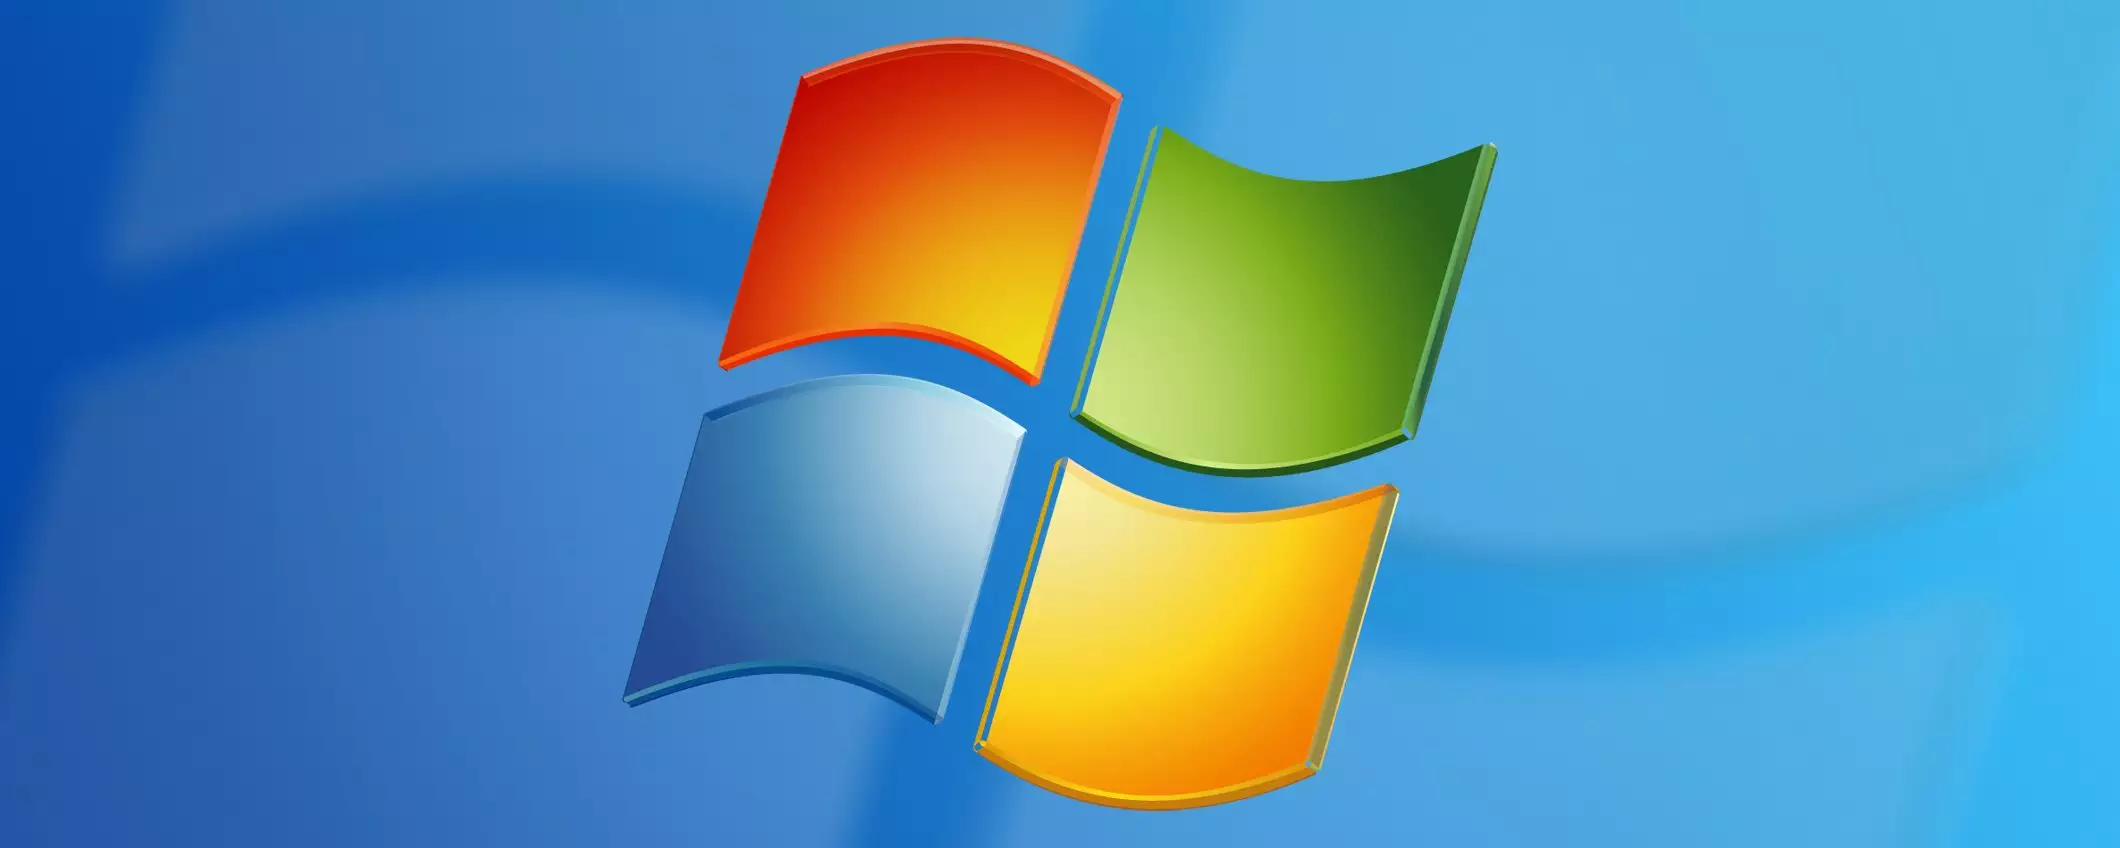 Ottimizzare le prestazioni di Windows: ecco i migliori software in circolazione